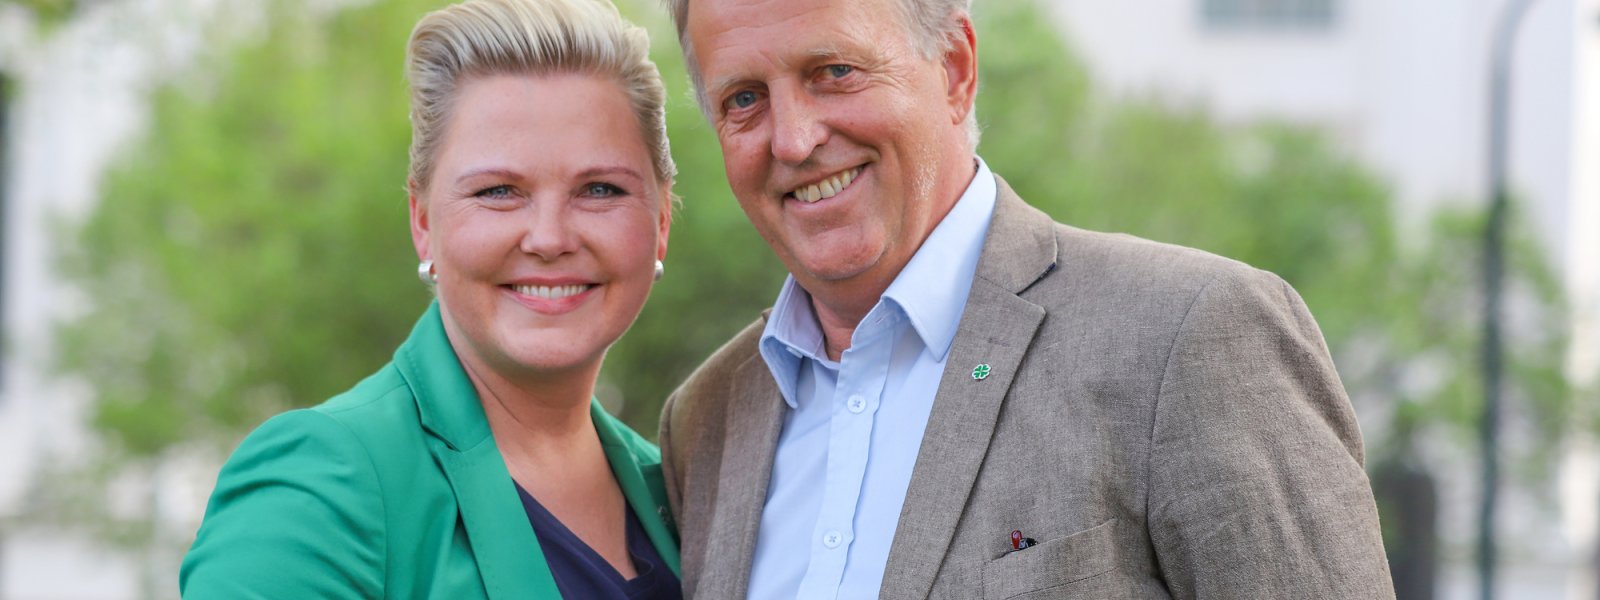 2019 Anne Beathe Kristiansen Tvinnereim og Olav Skinnes. Valgkampbilde for fylkestingsvalget 2019